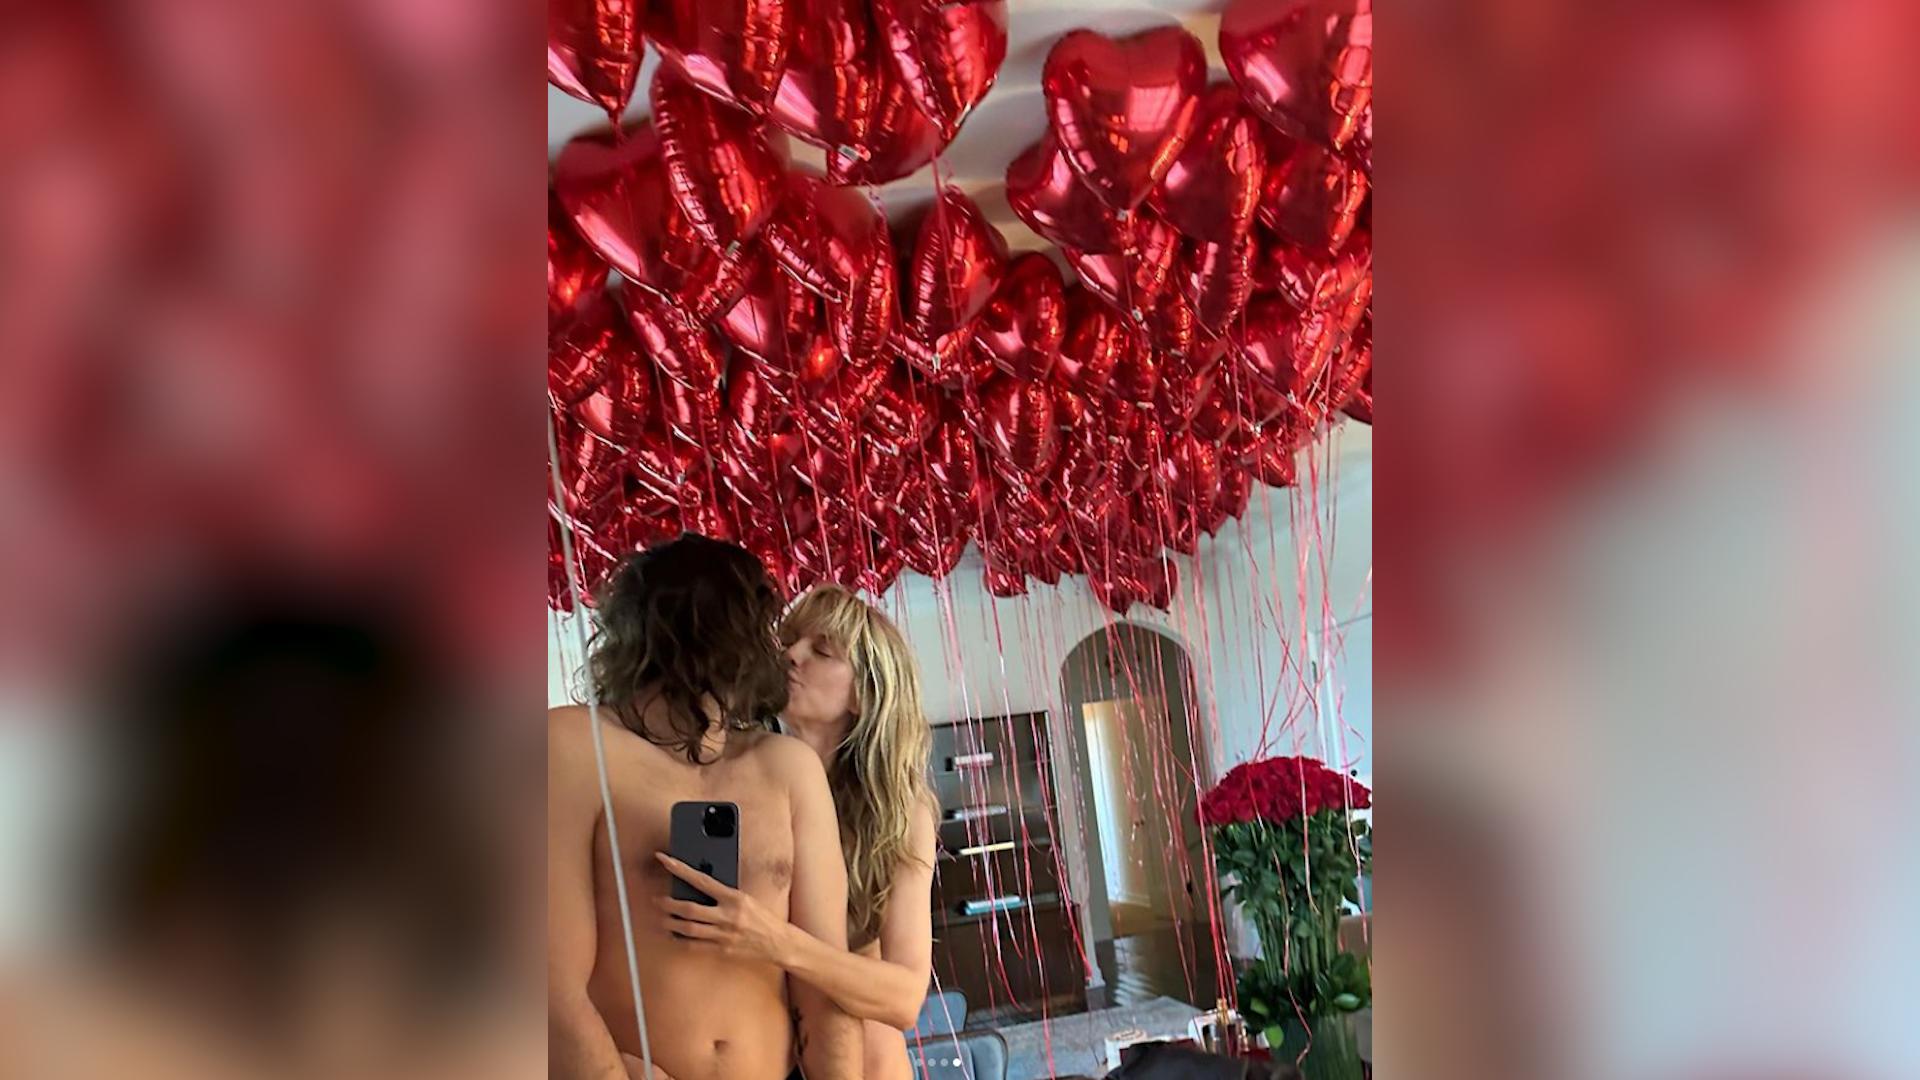 Heidi Klum e Tom Kaulitz appaiono nudi in rete, non per la prima volta